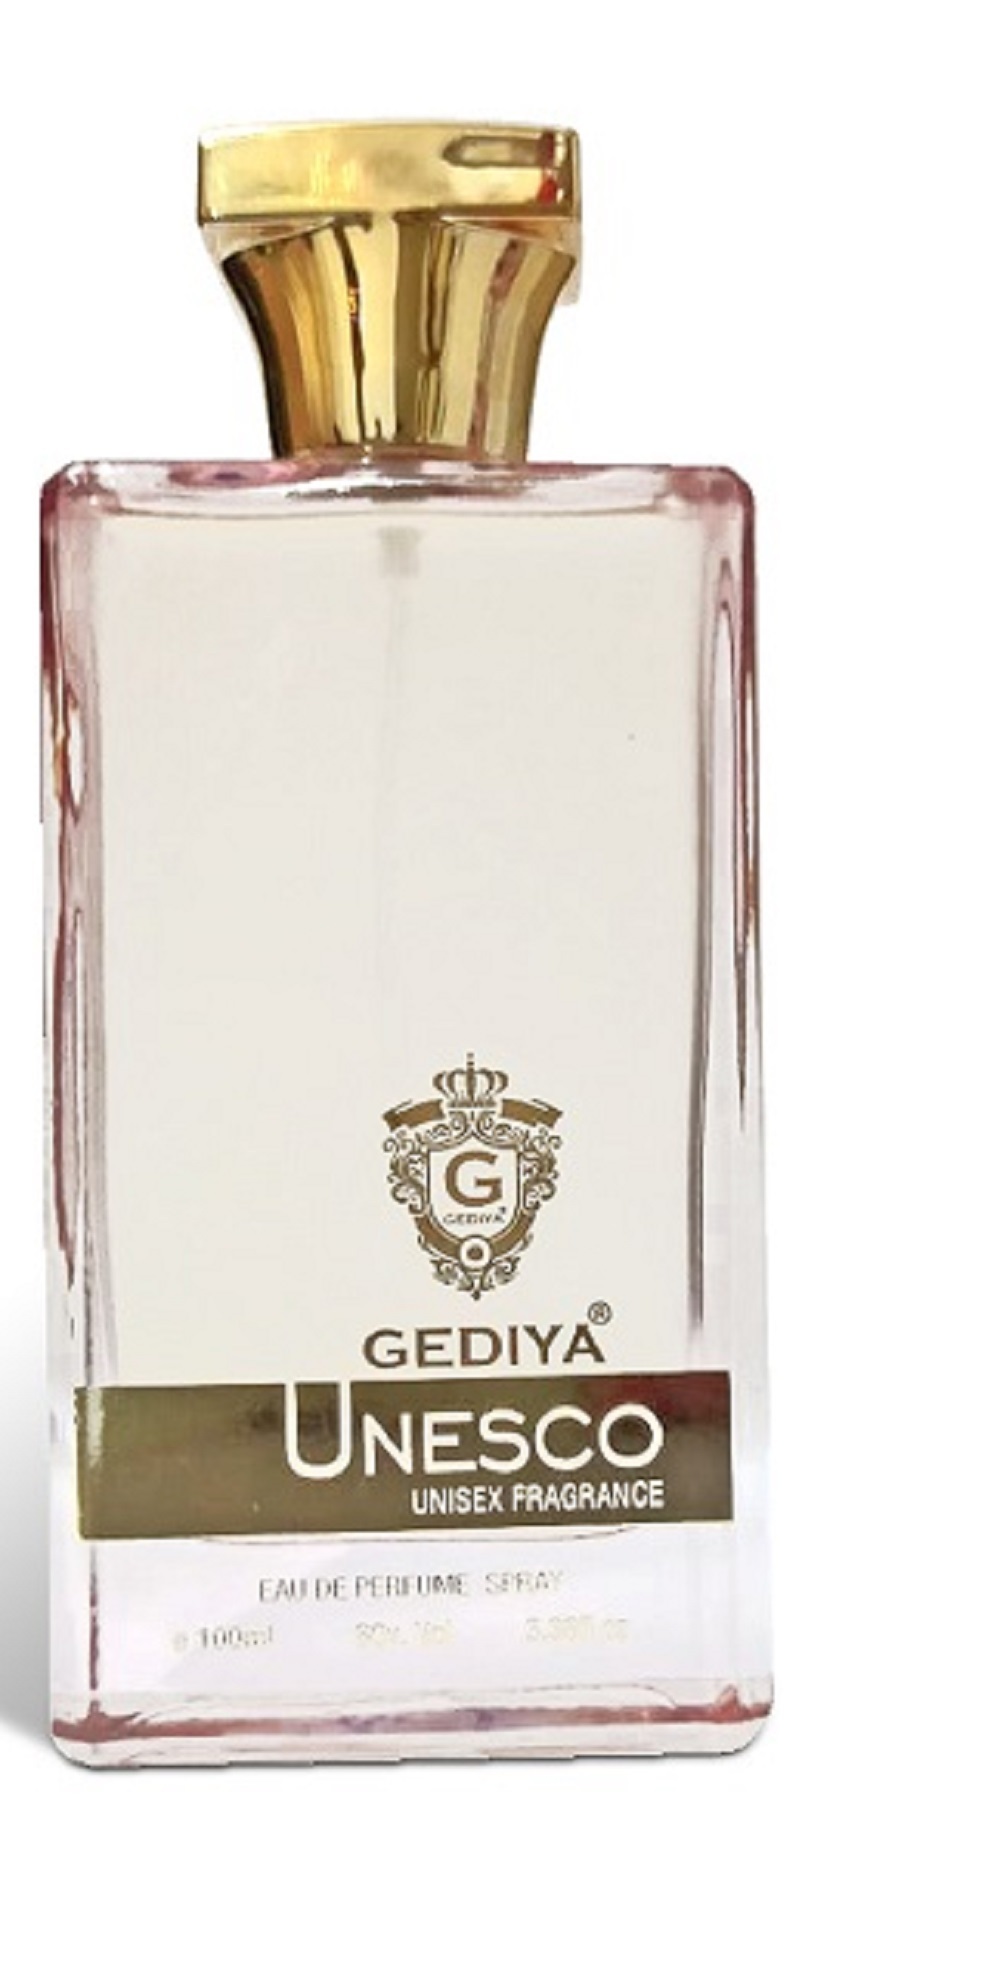 Perfume Unesco 100ml